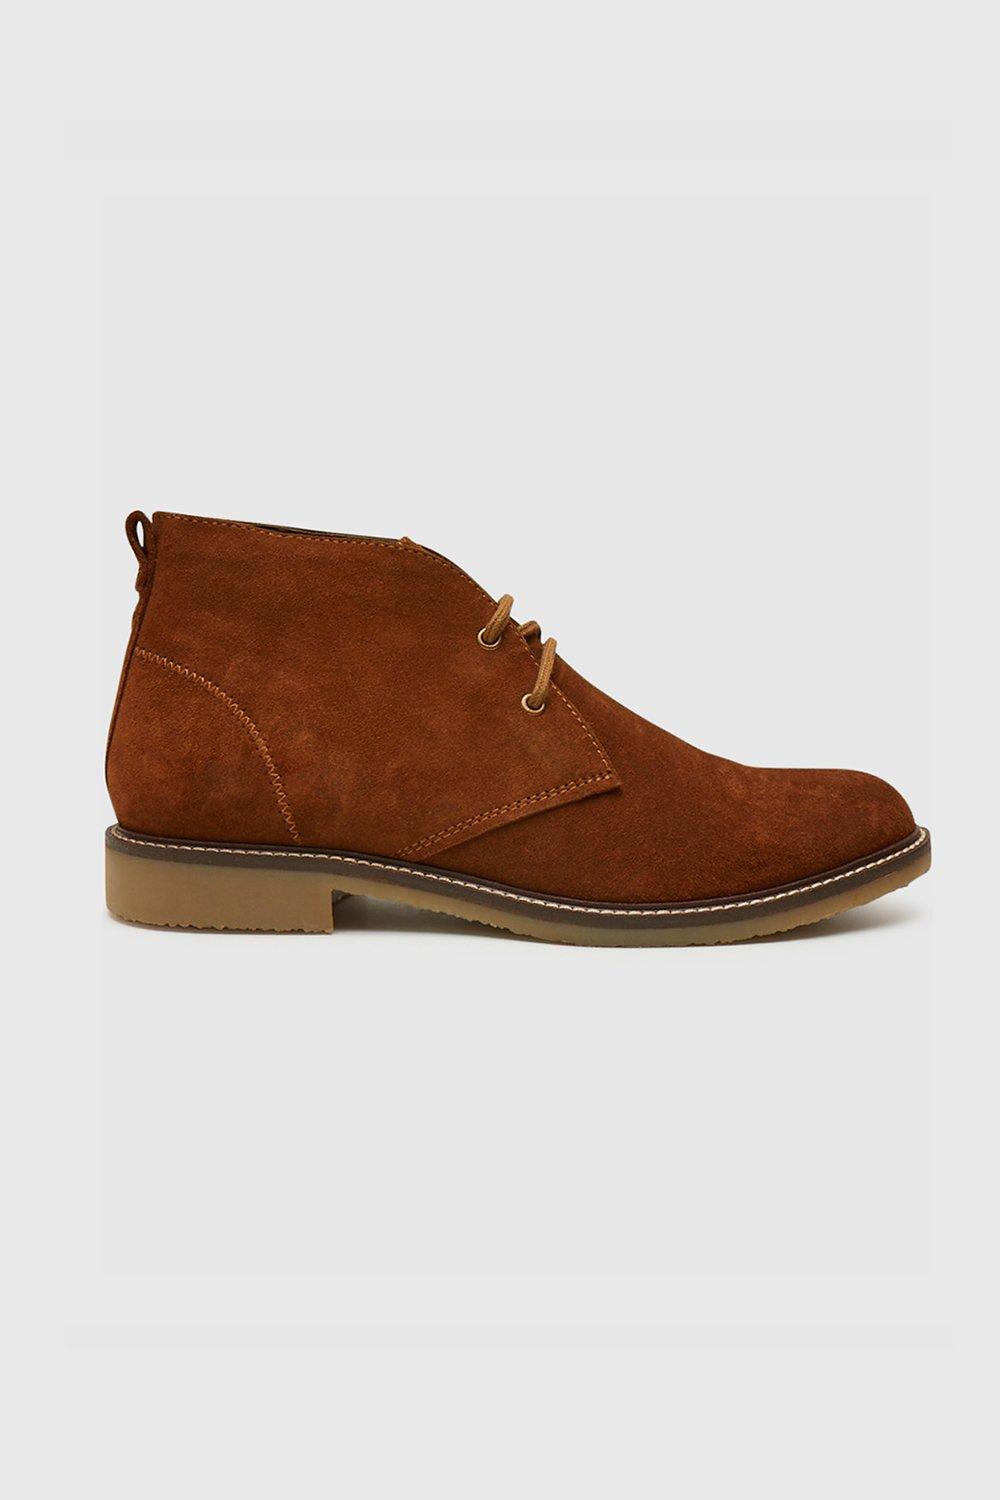 Замшевые ботинки дезерты 'Briggs' Farah Footwear, коричневый замшевые ботинки дезерты clarks цвет brown suede